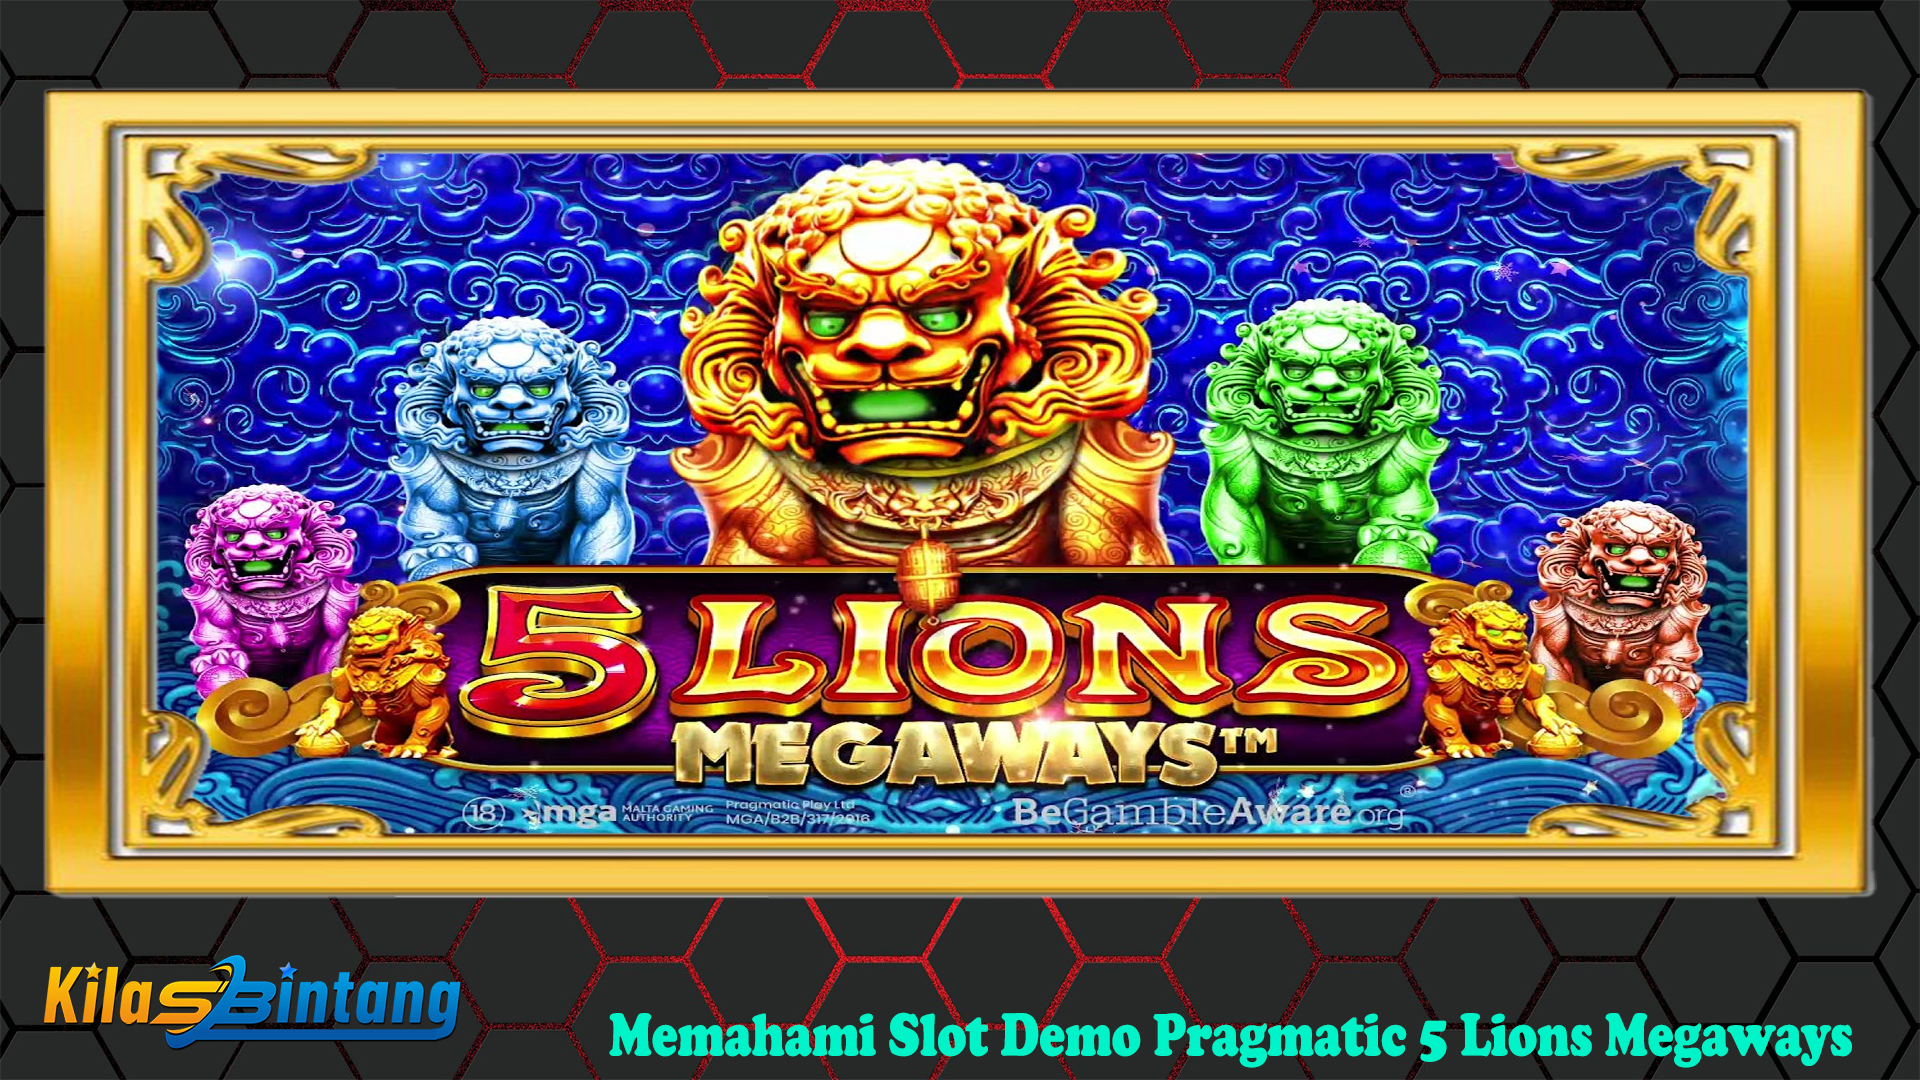 Memahami Slot Demo Pragmatic 5 Lions Megaways